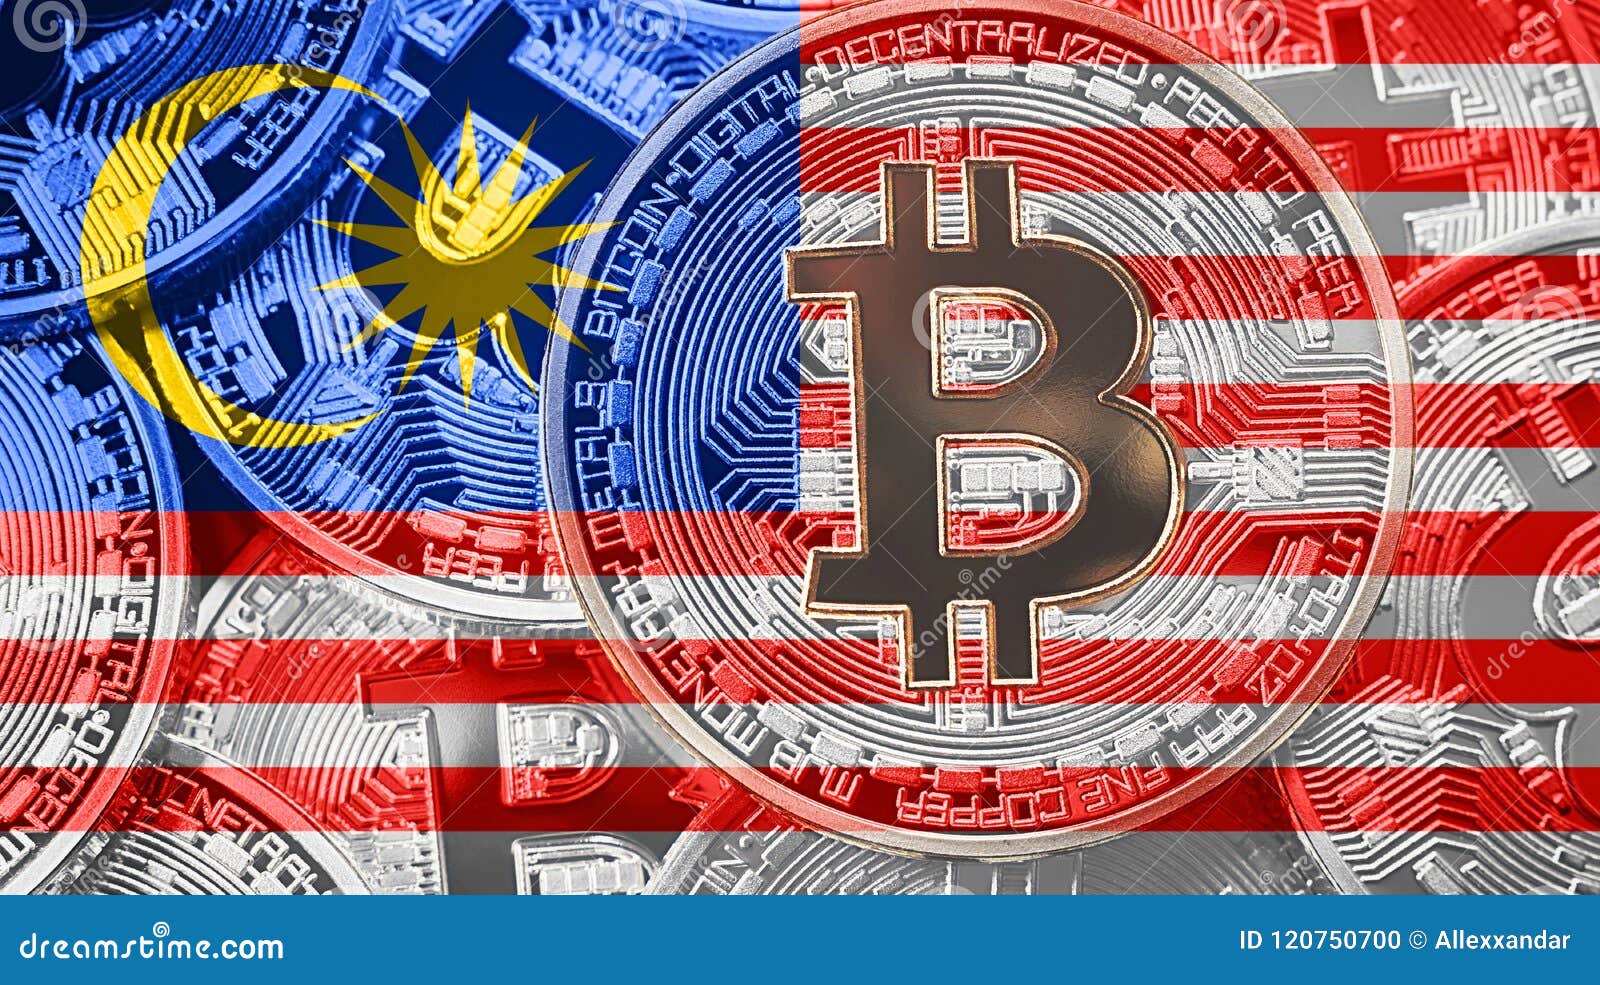 Bitcoin malaysia best.crypto.wallet